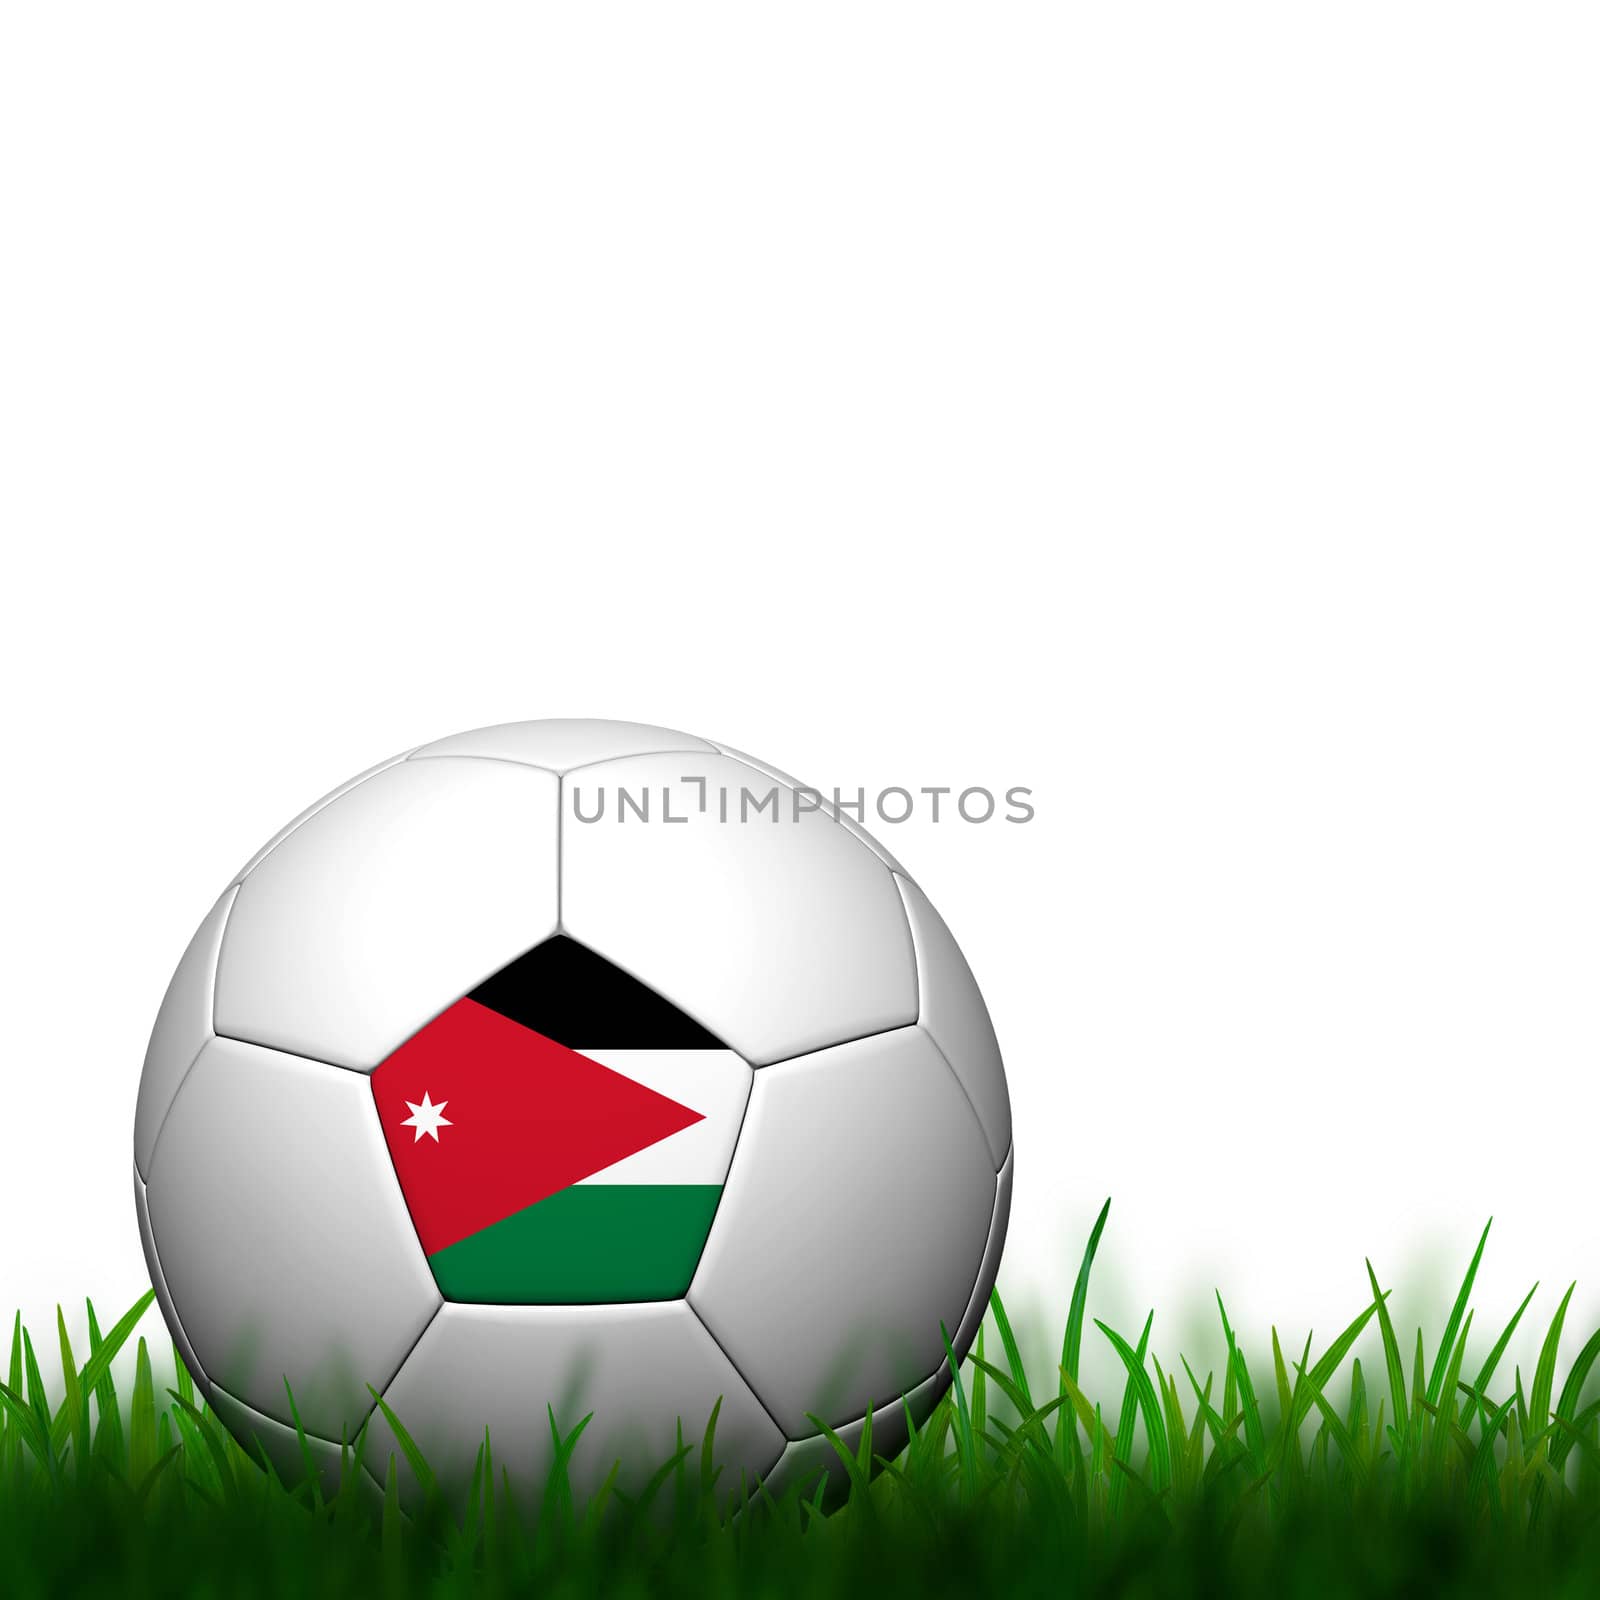 3D Football Jordan Flag Patter in green grass on white backgroun by jakgree